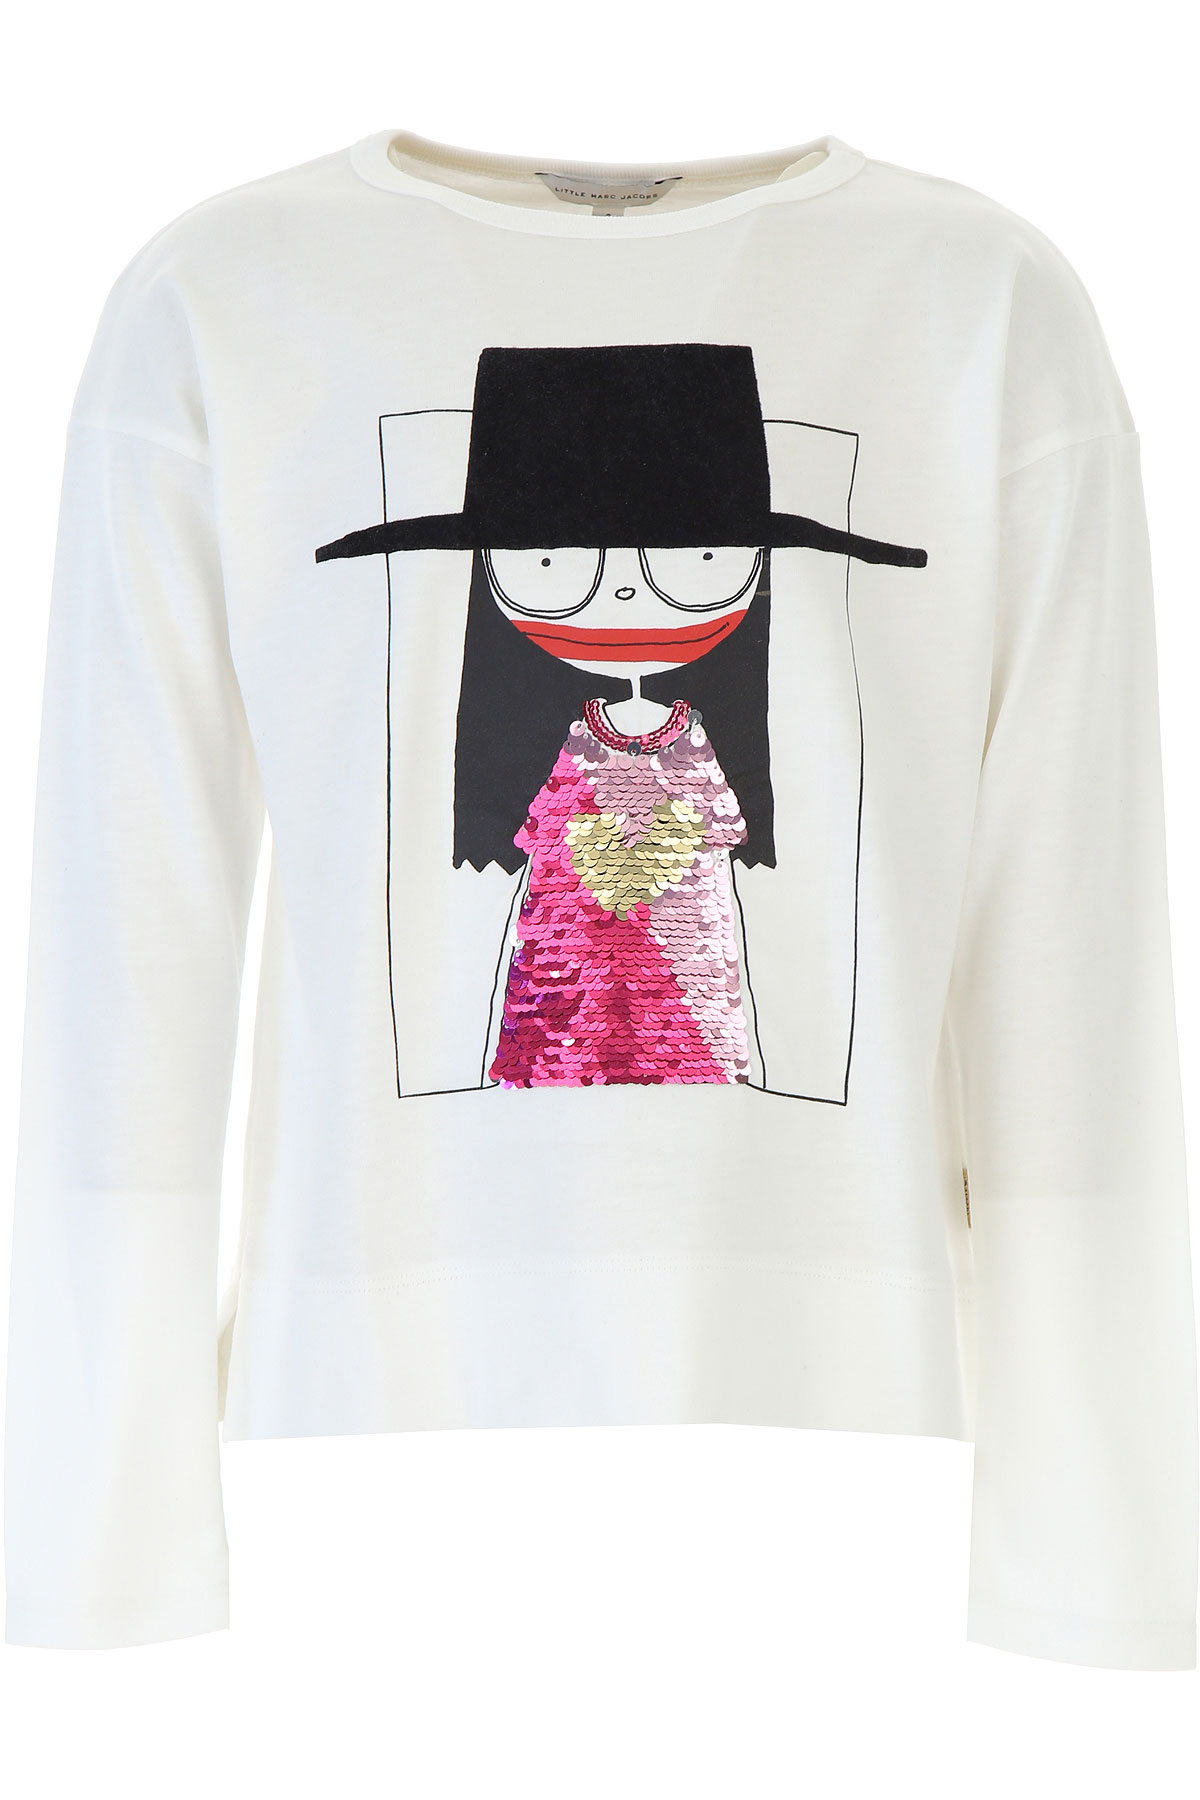 Marc Jacobs Kinder T-Shirt für Mädchen Günstig im Sale, Weiss, Baumwolle, 2017, 10Y 12Y 14Y 3Y 4Y 5Y 6Y 8Y